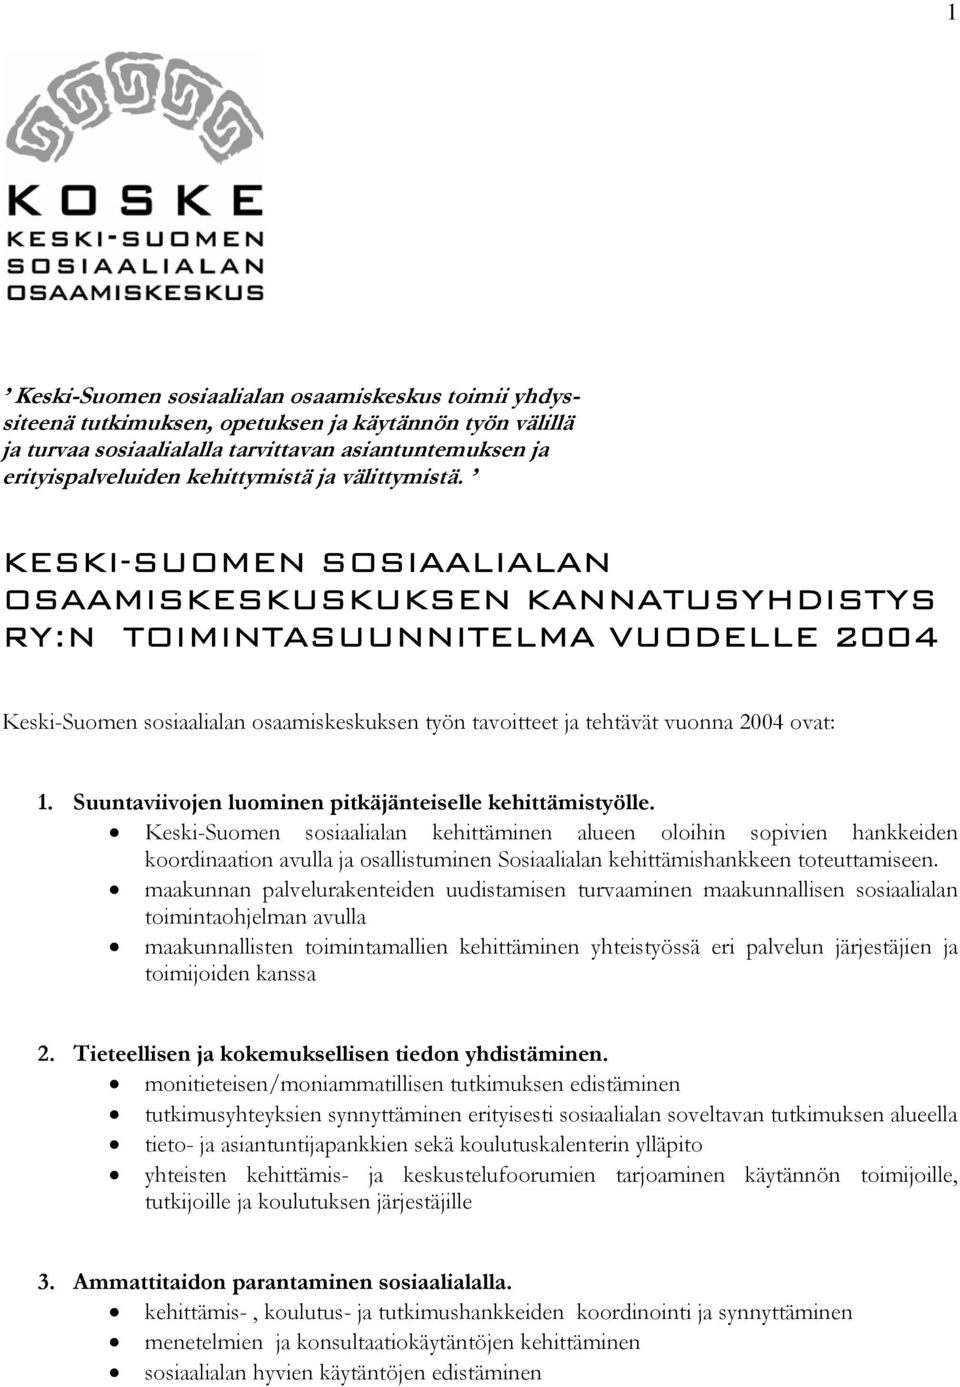 KESKI-SUOMEN SOSIAALIALAN OSAAMISKESKUSKUKSEN KANNATUSYHDISTYS RY:N TOIMINTASUUNNITELMA VUODELLE 2004 Keski-Suomen sosiaalialan osaamiskeskuksen työn tavoitteet ja tehtävät vuonna 2004 ovat: 1.